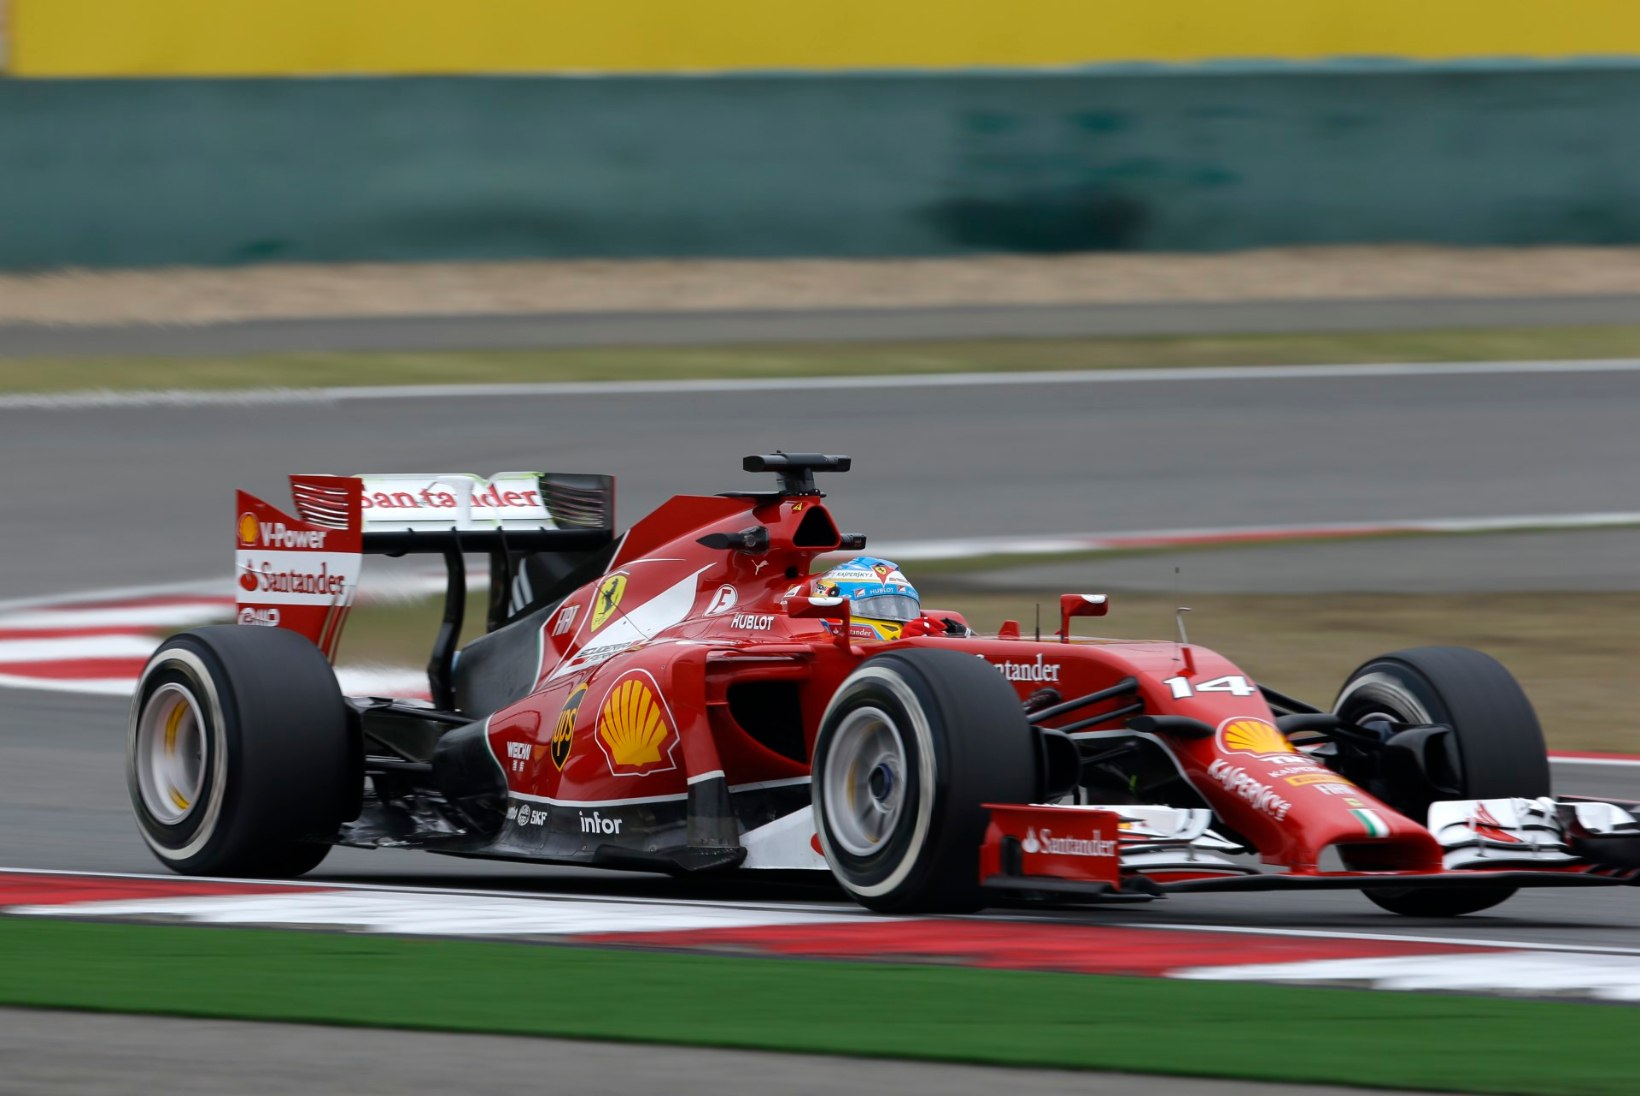 FOTOD: Hiina GP tänaste vabatreeningute kiireimad olid Alonso ja Hamilton